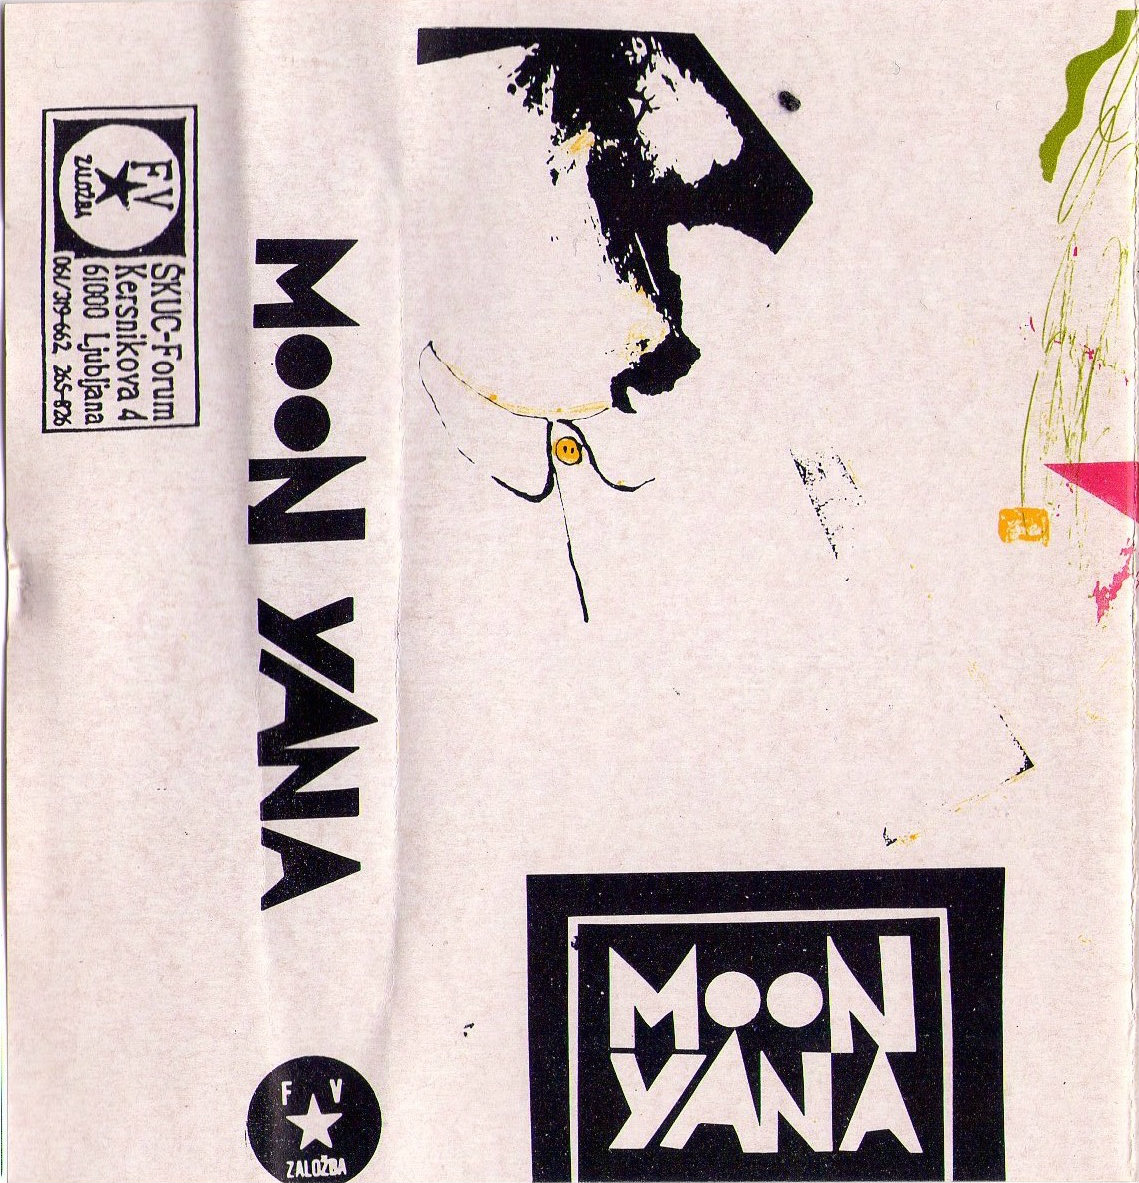 Moonyana front